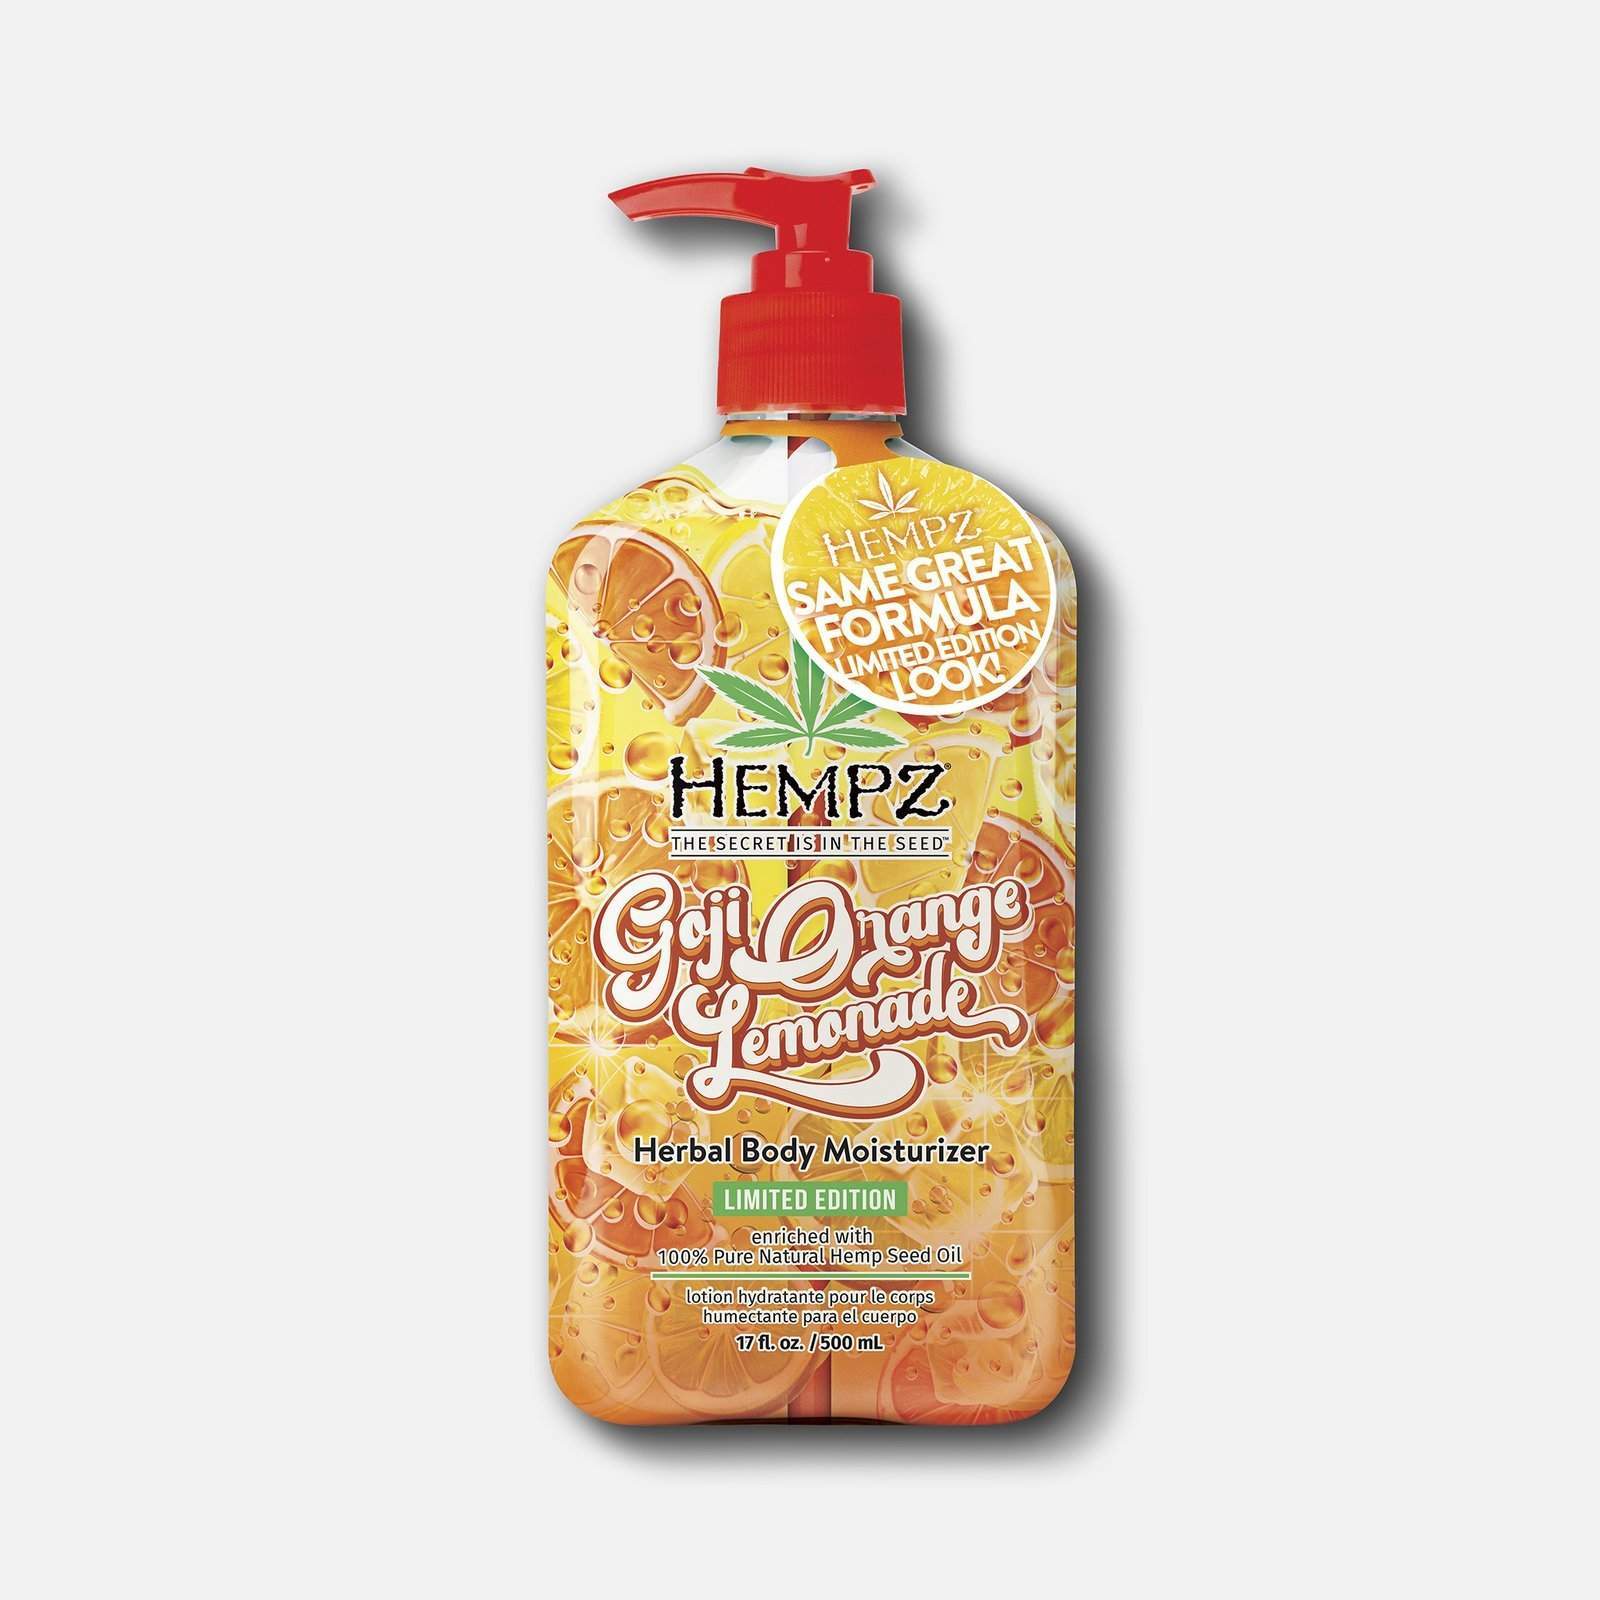 Hempz Goji Orange Lemonade Herbal Body Moisturizer 17 fl oz.-Hempz-BB_Lotion,BB_Moisturizers,Brand_Hempz,Collection_Bath and Body,Hempz_Body Moisturizers